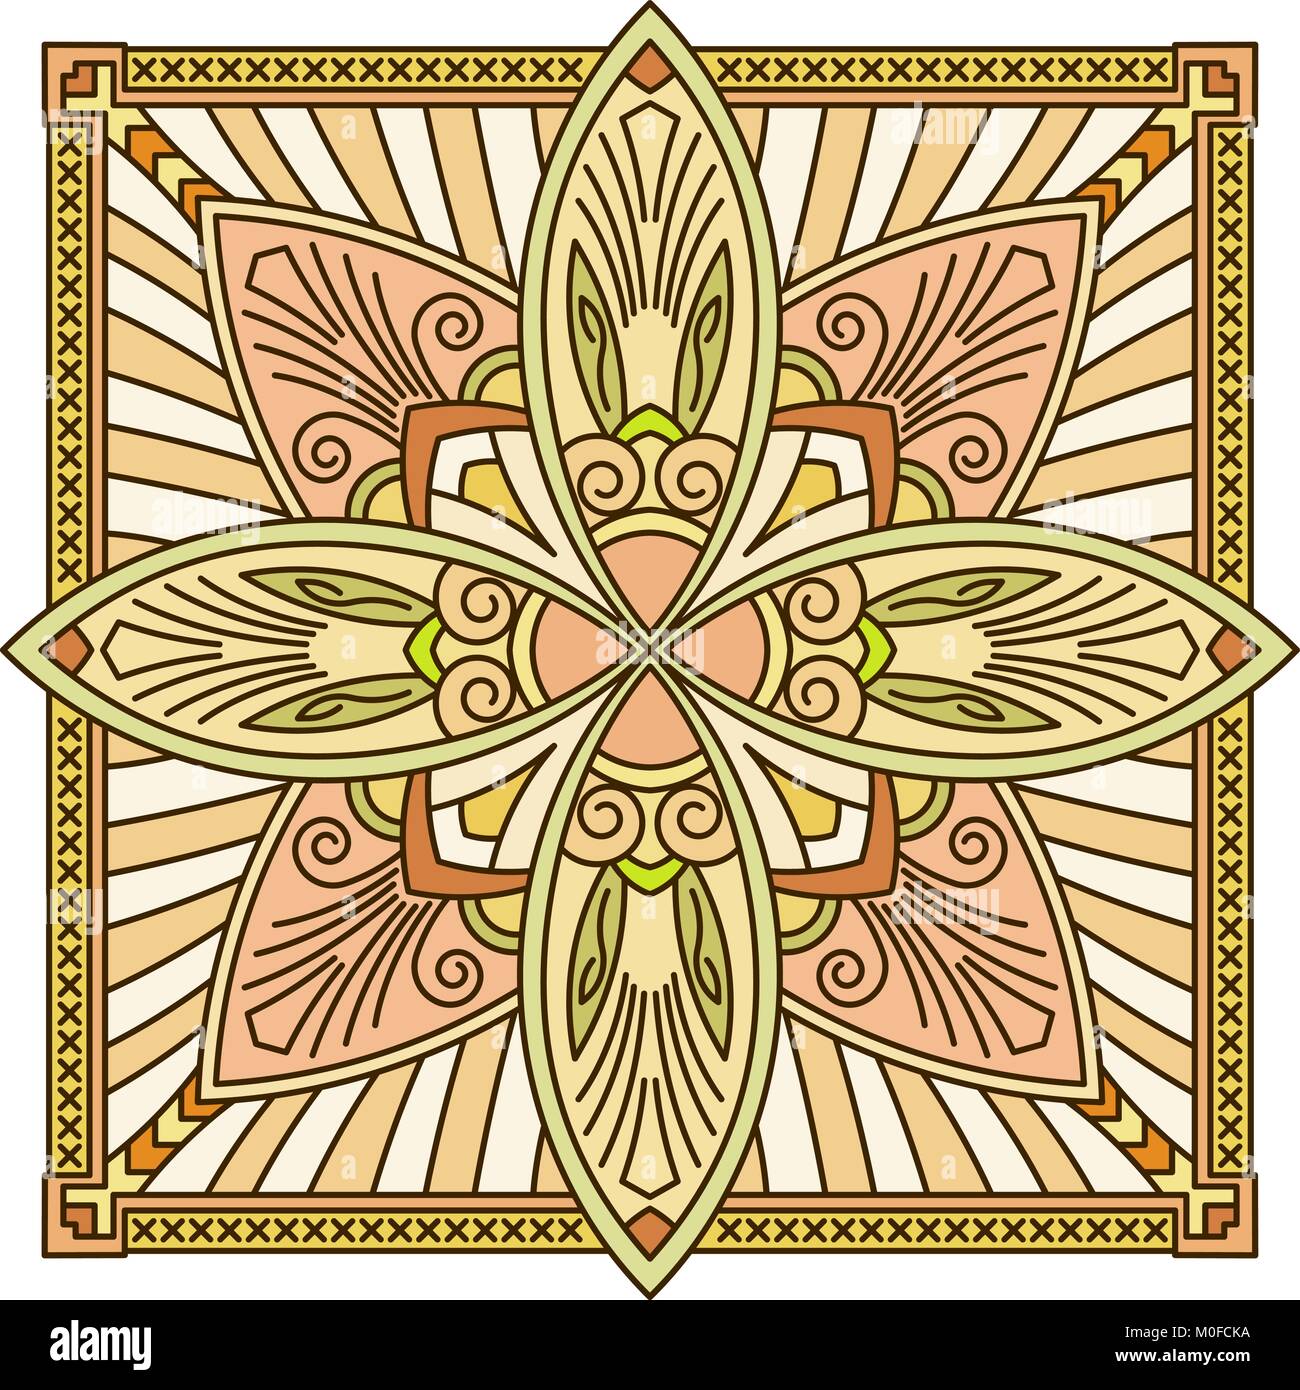 Abstract vector farbige Quadrat spitze Design in Mono line style - Mandala, ethnischen dekoratives Element. Kann als Anti stress Therapie verwendet werden. Stock Vektor